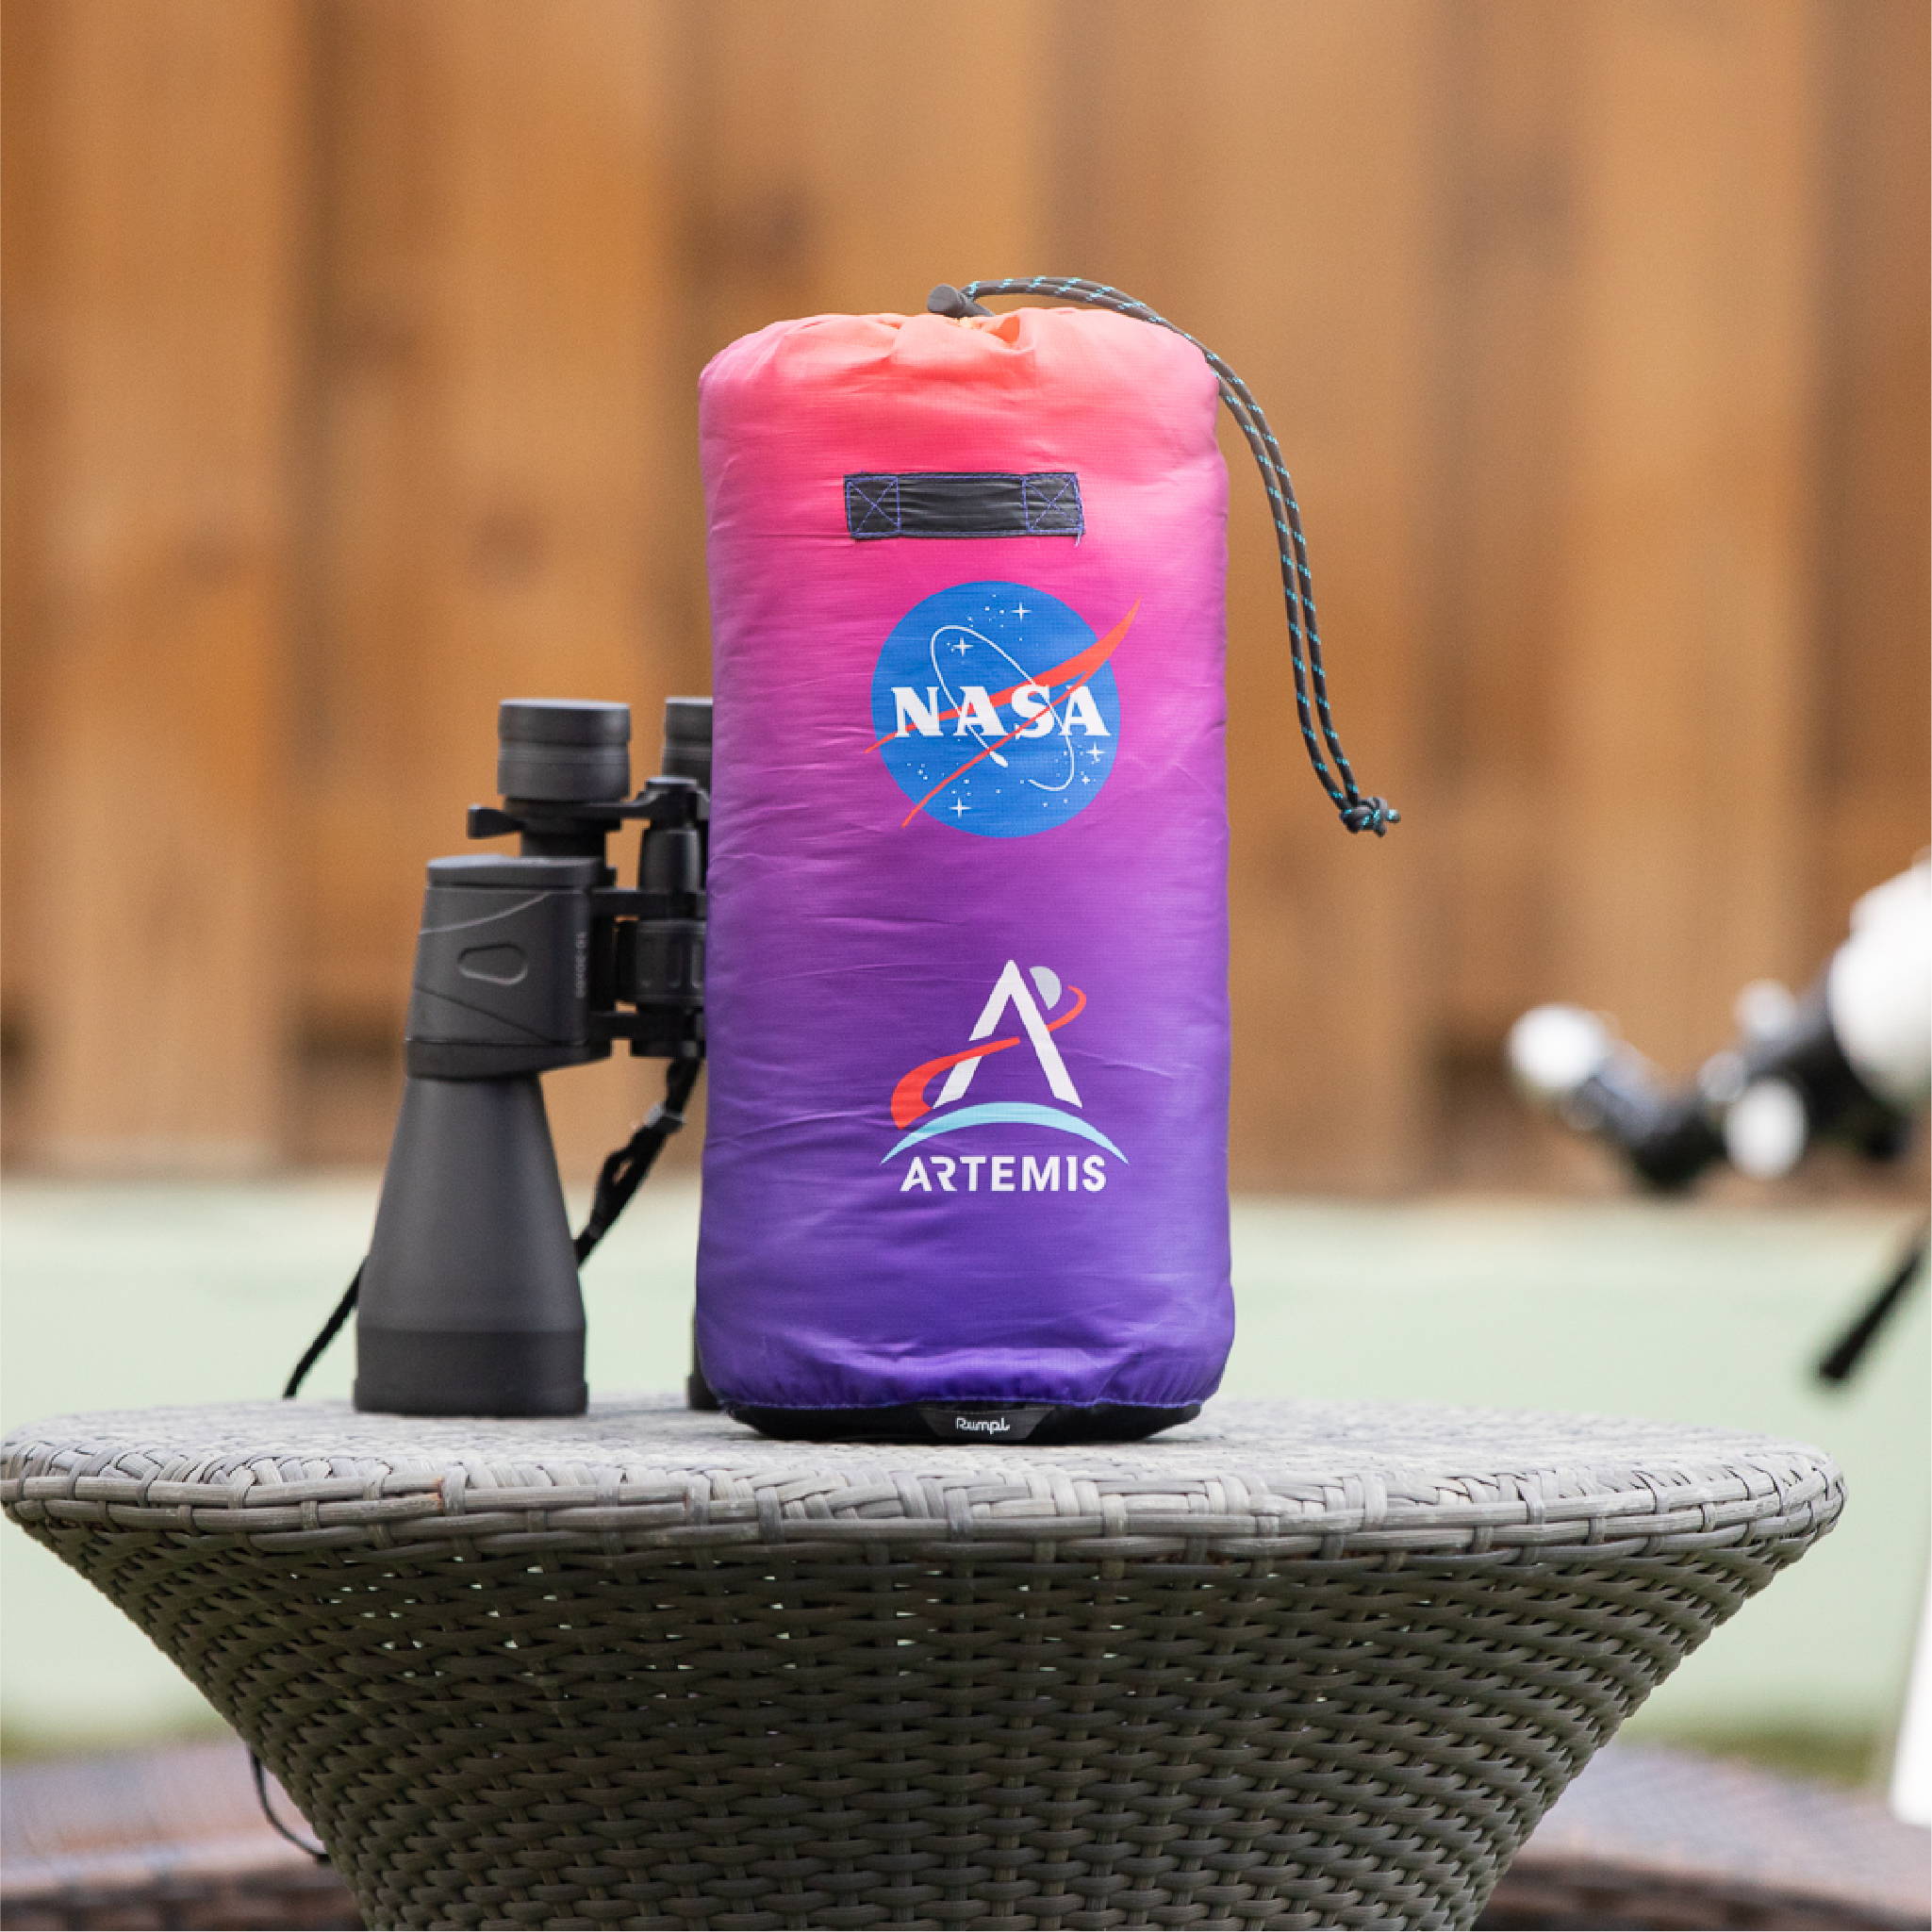 NASA Artemis Rumpl blanket sitting by binoculars